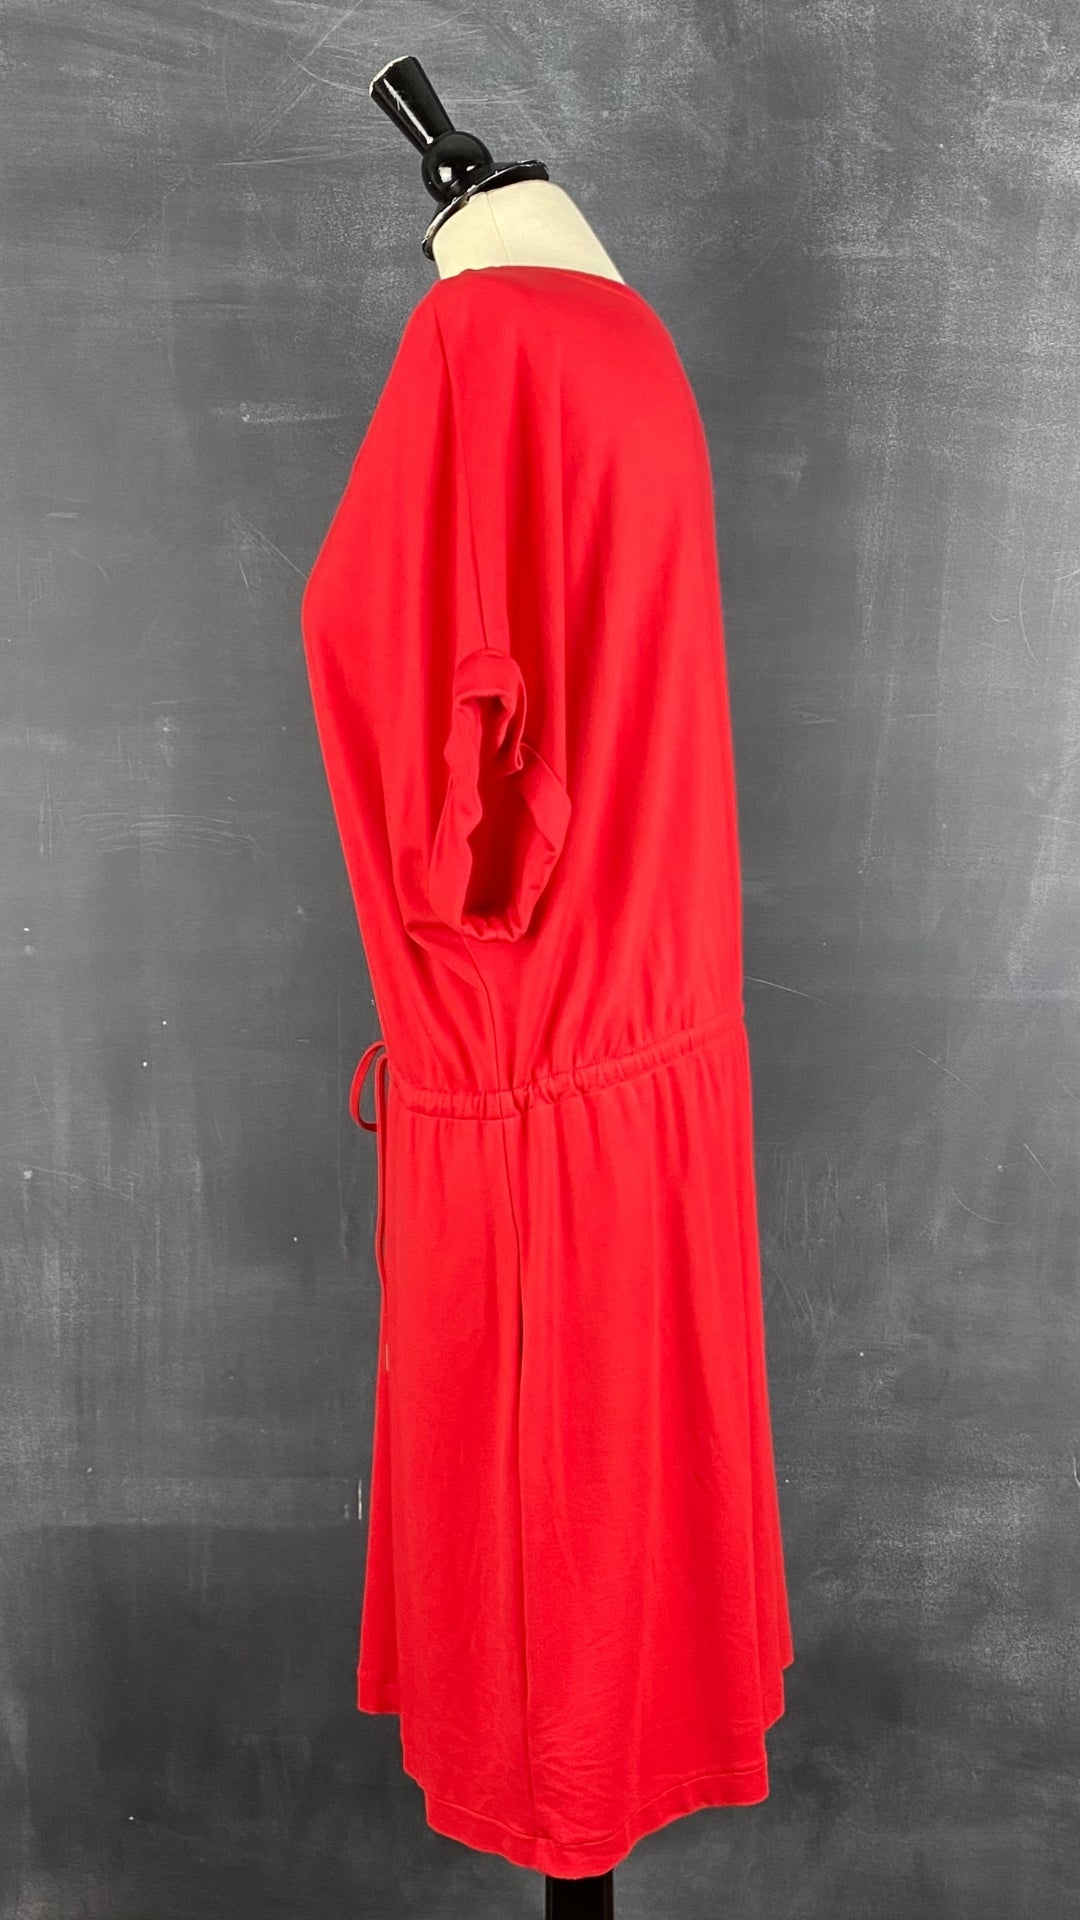 Robe en jersey extensible rouge avec poches Rachel Rachel Roy, taille xxl. Vue de côté.